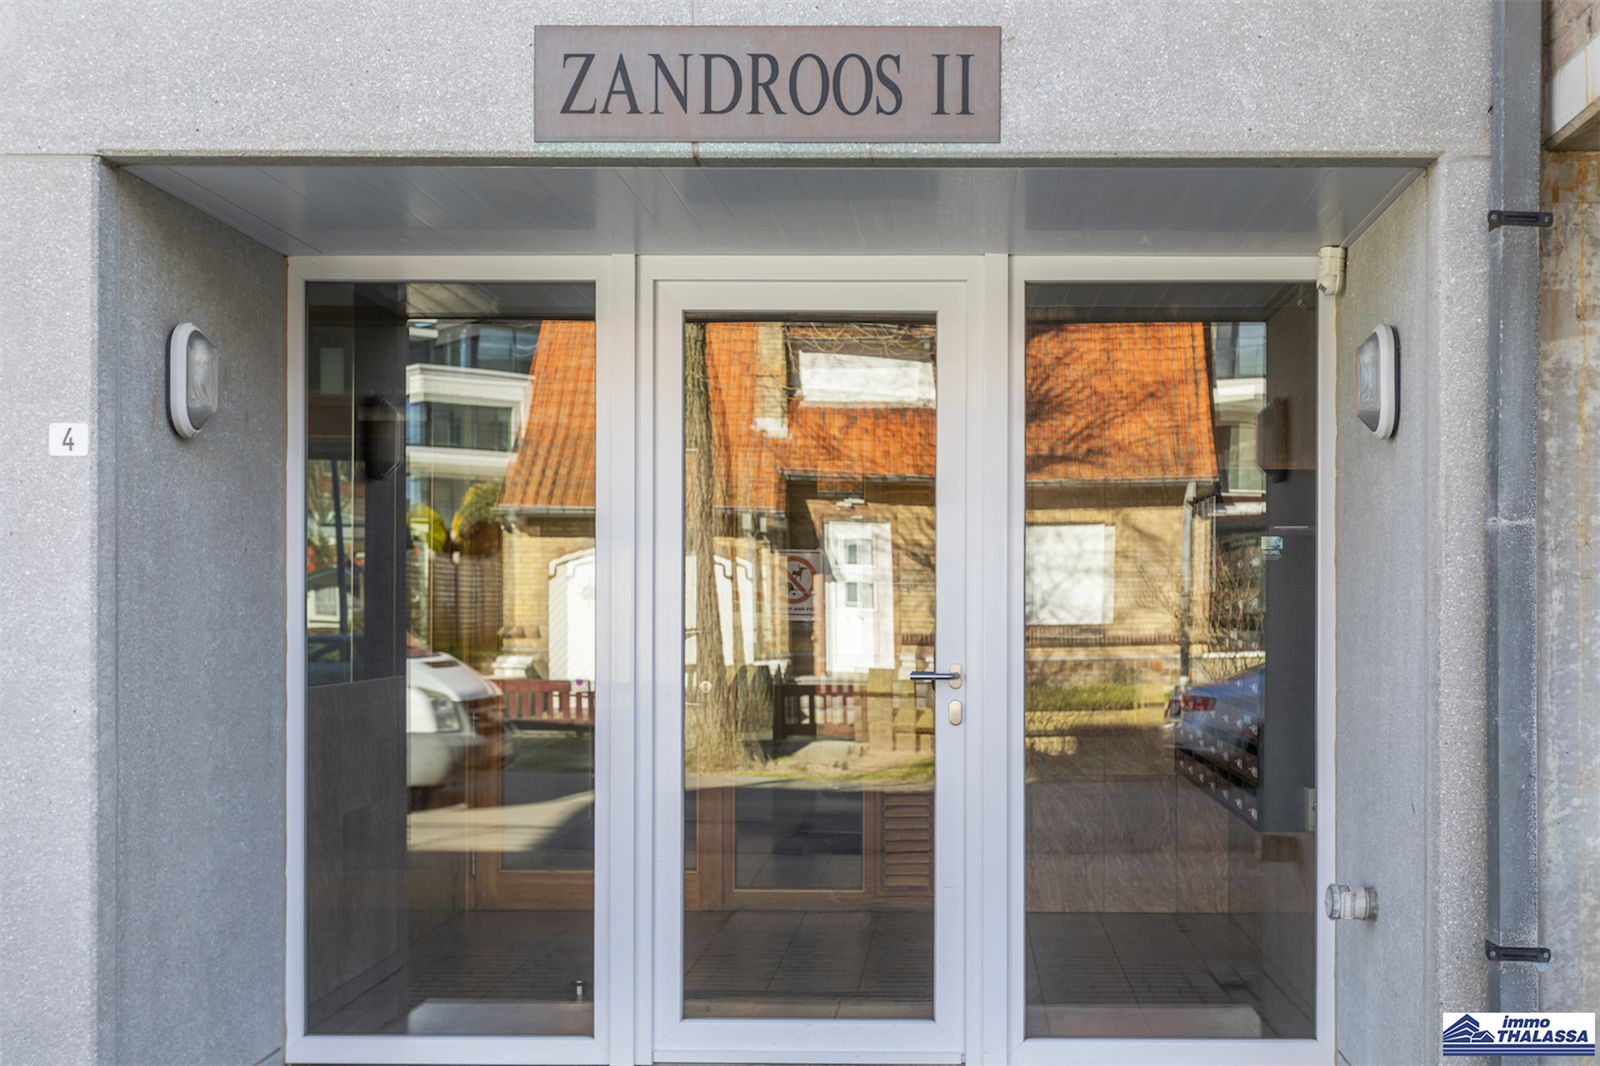 Zandroos II/Zandroos II / 407